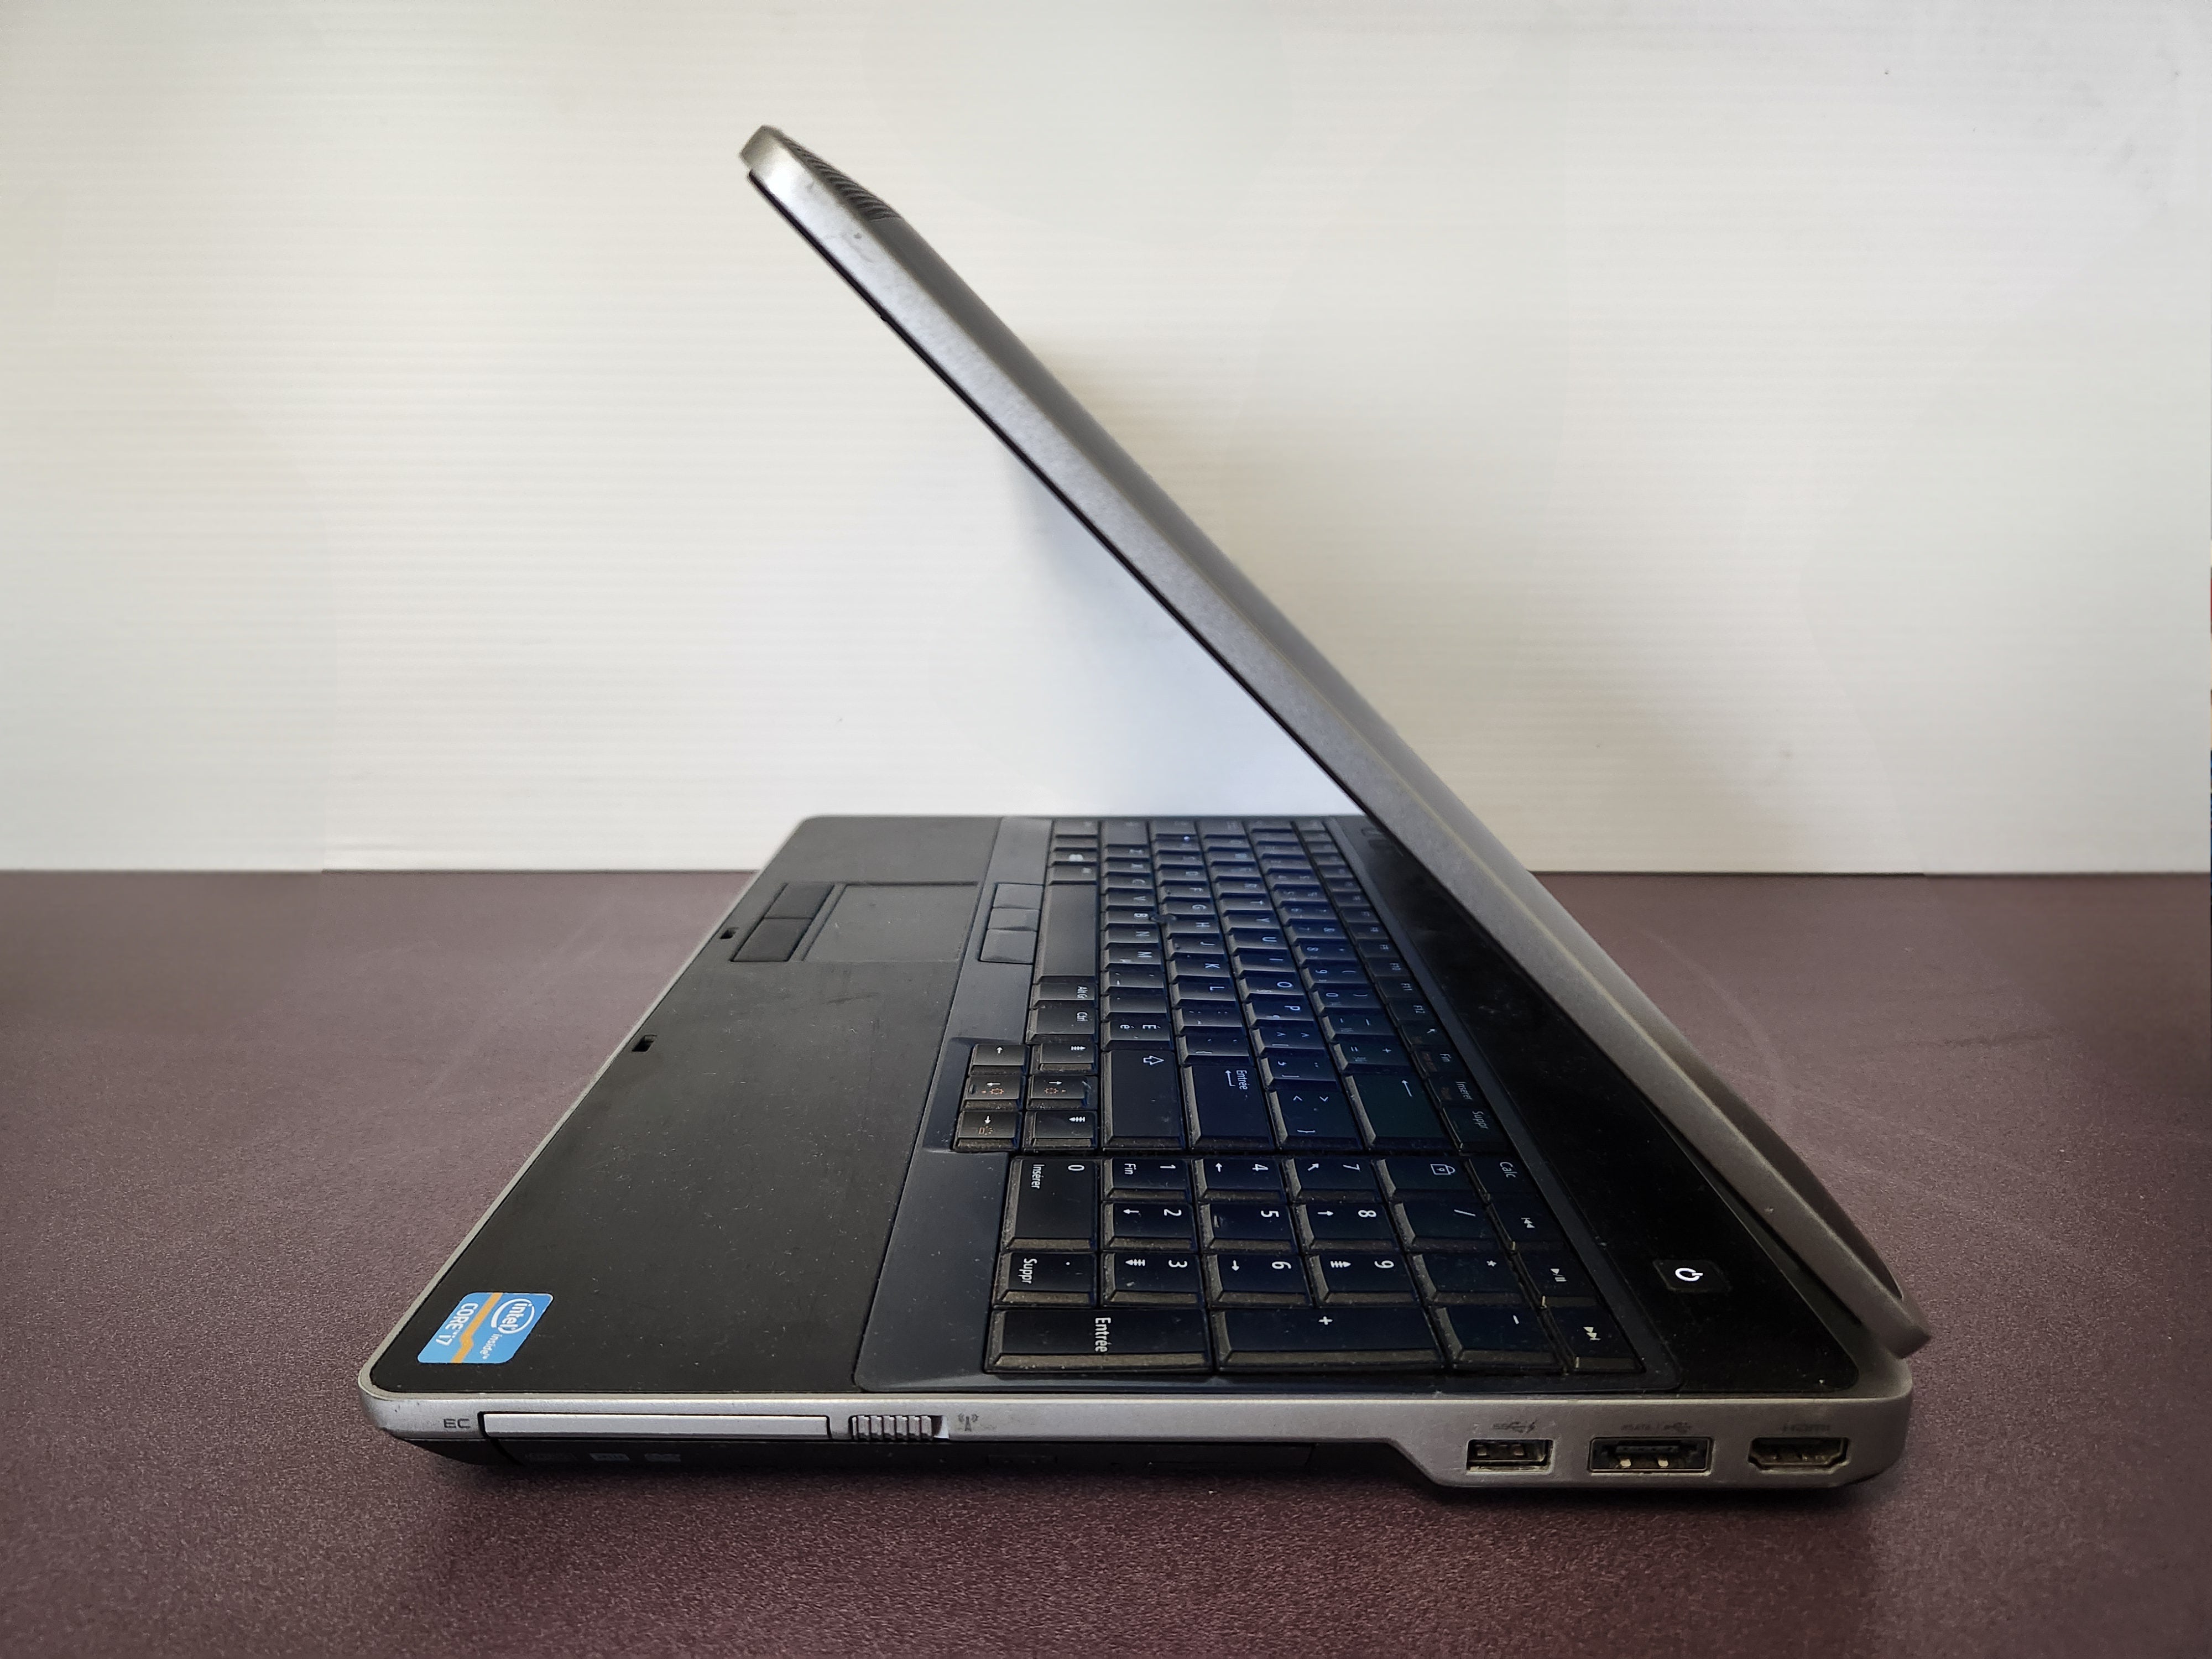 Dell Latitude E6530 - Refurbished Laptop